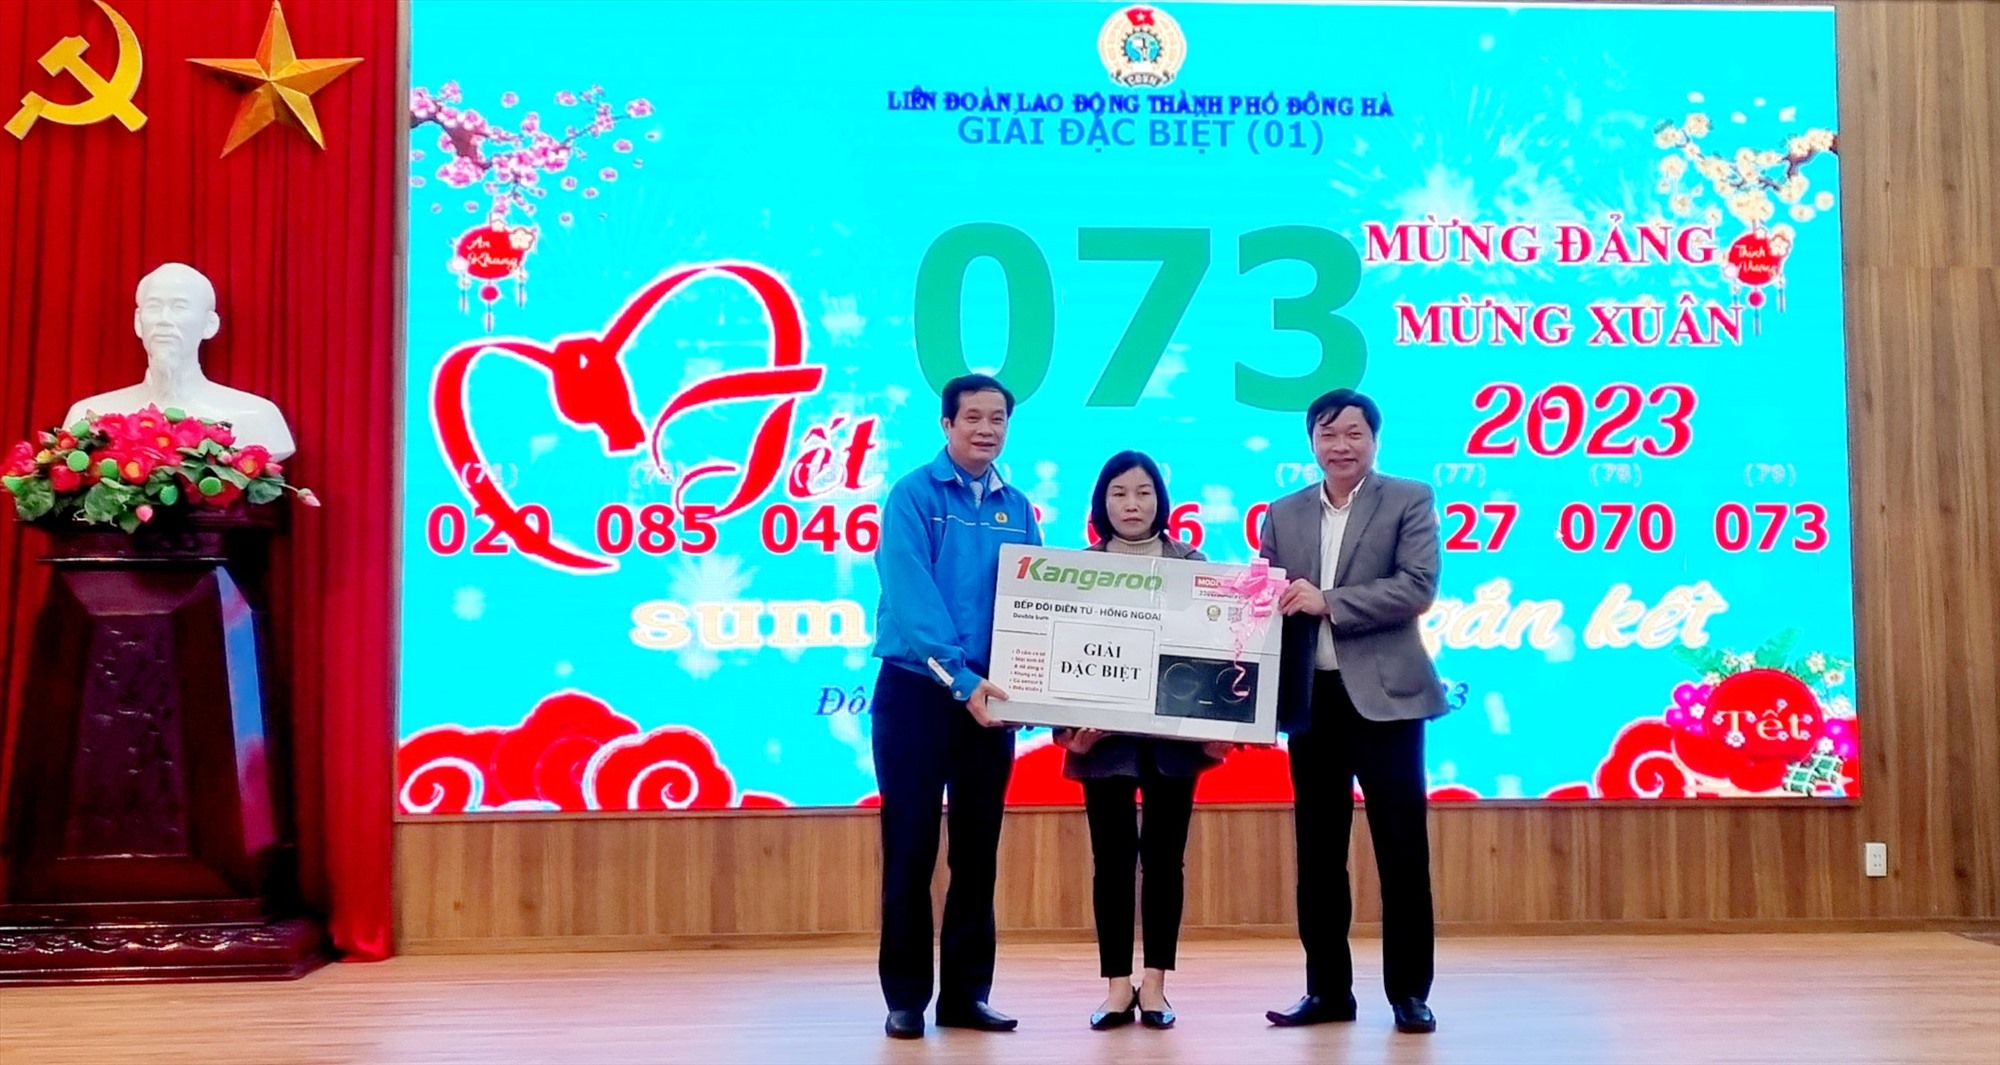 Phó Chủ tịch Thường trực Ủy ban MTTQ Việt Nam Lê Hồng Sơn trao quà cho người lao động nghèo tại chương trình - Ảnh: K.S